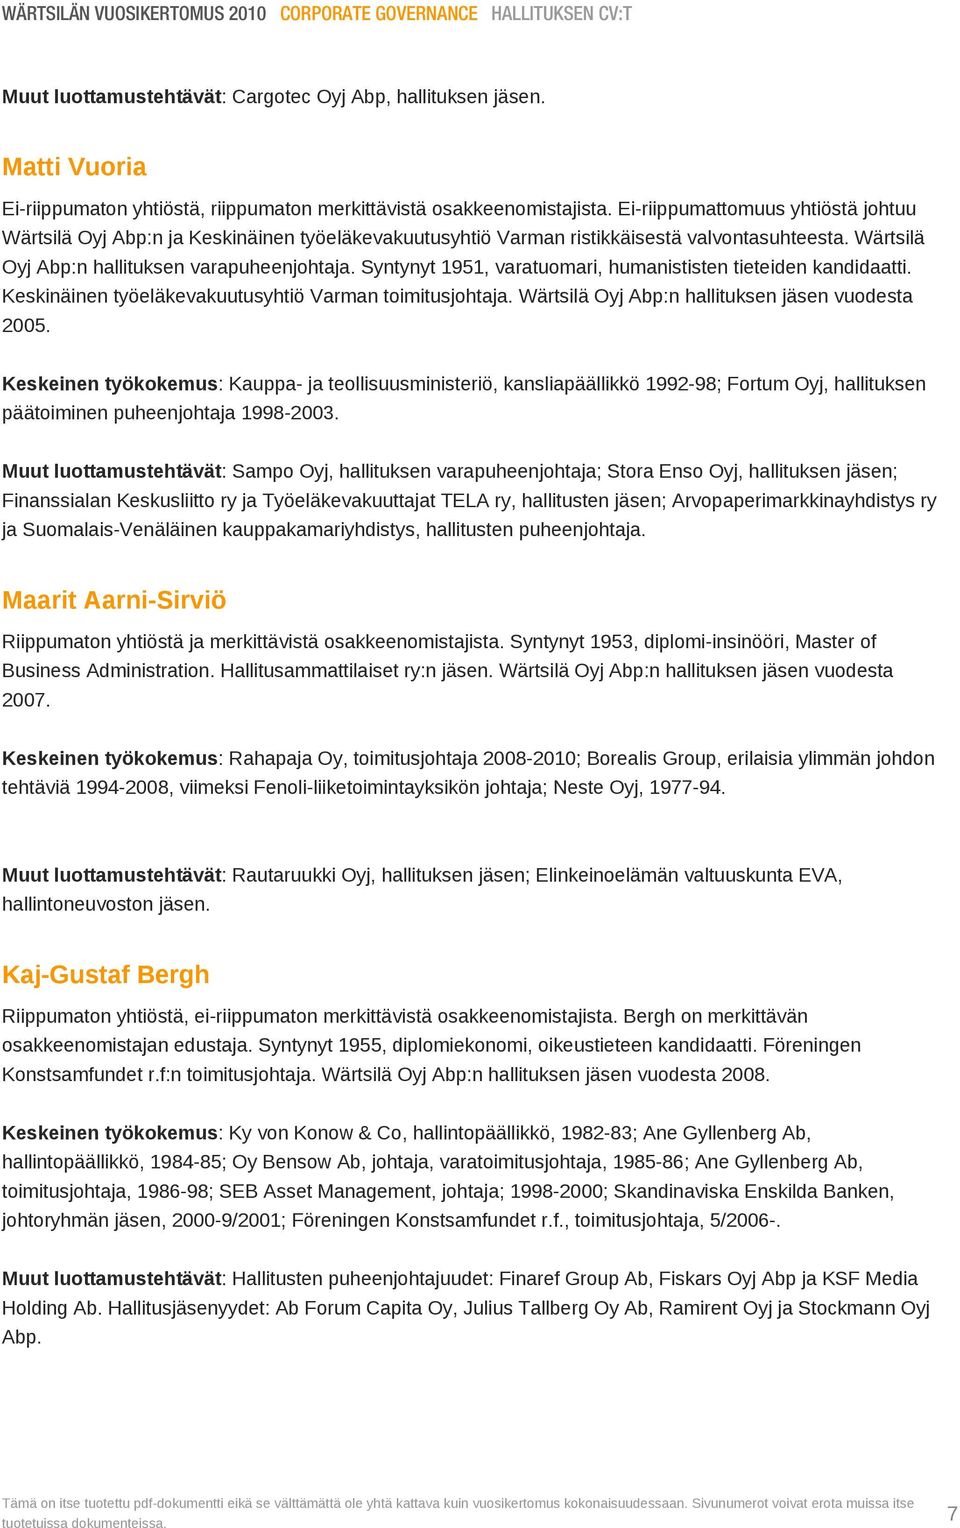 Ei-riippumattomuus yhtiöstä johtuu Wärtsilä Oyj Abp:n ja Keskinäinen työeläkevakuutusyhtiö Varman ristikkäisestä valvontasuhteesta. Wärtsilä Oyj Abp:n hallituksen varapuheenjohtaja.